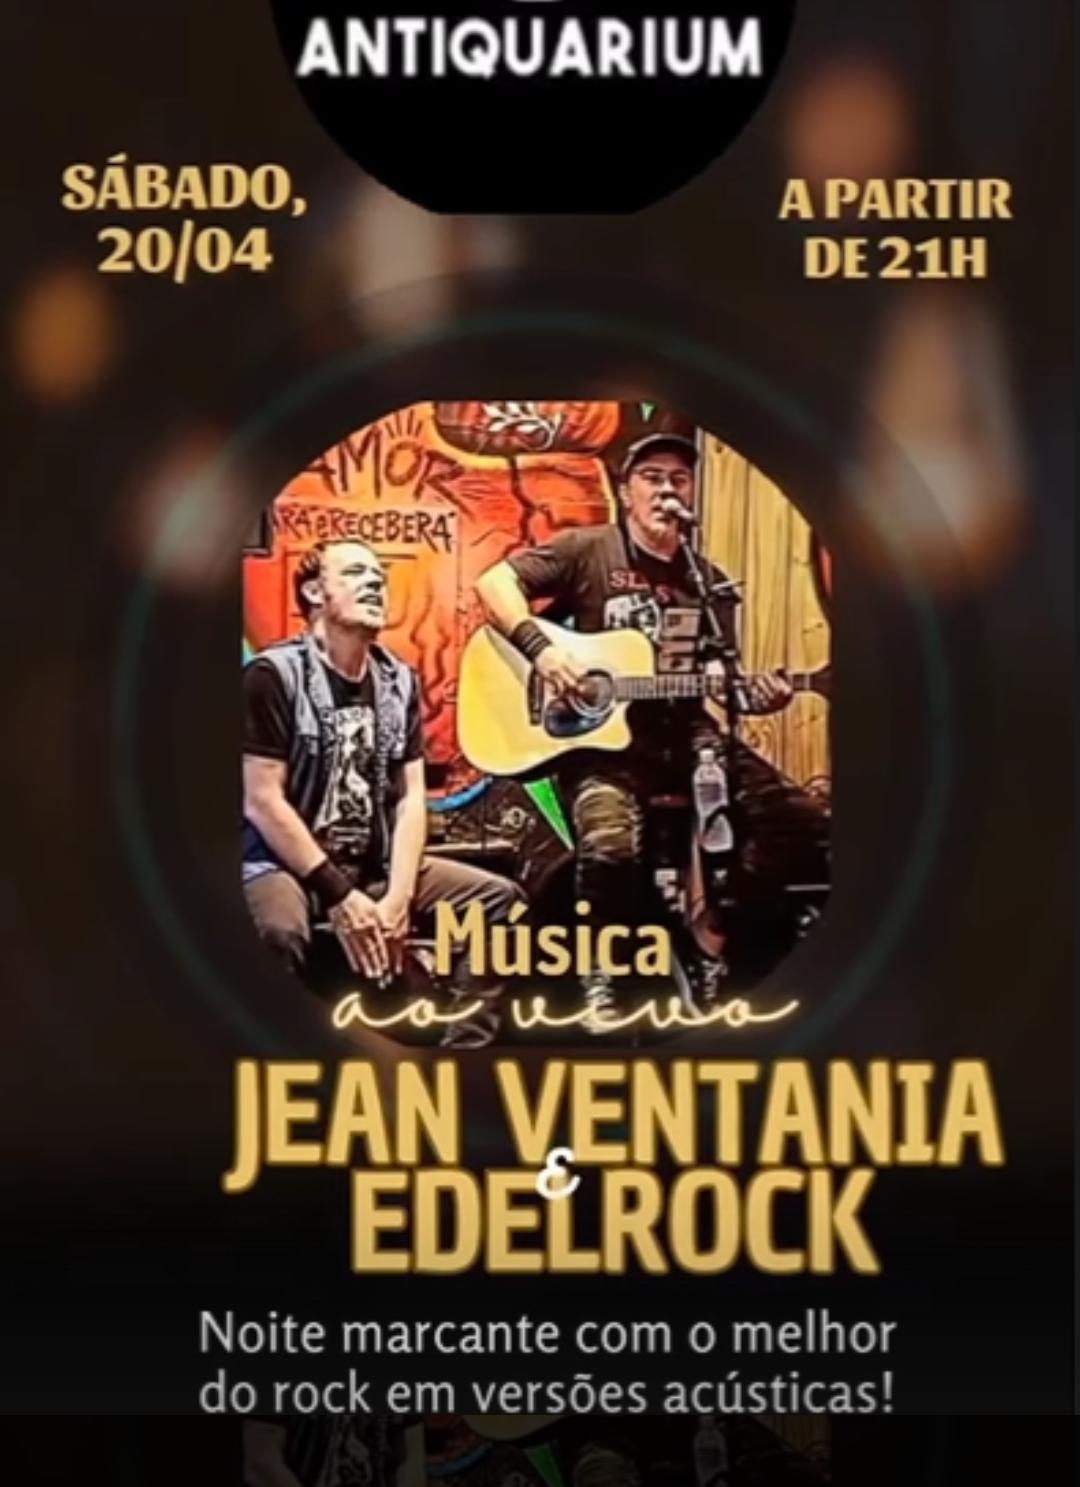 Música ao vivo com Jean Ventania & Edelrock - Antiquarium Pub | Passos MG